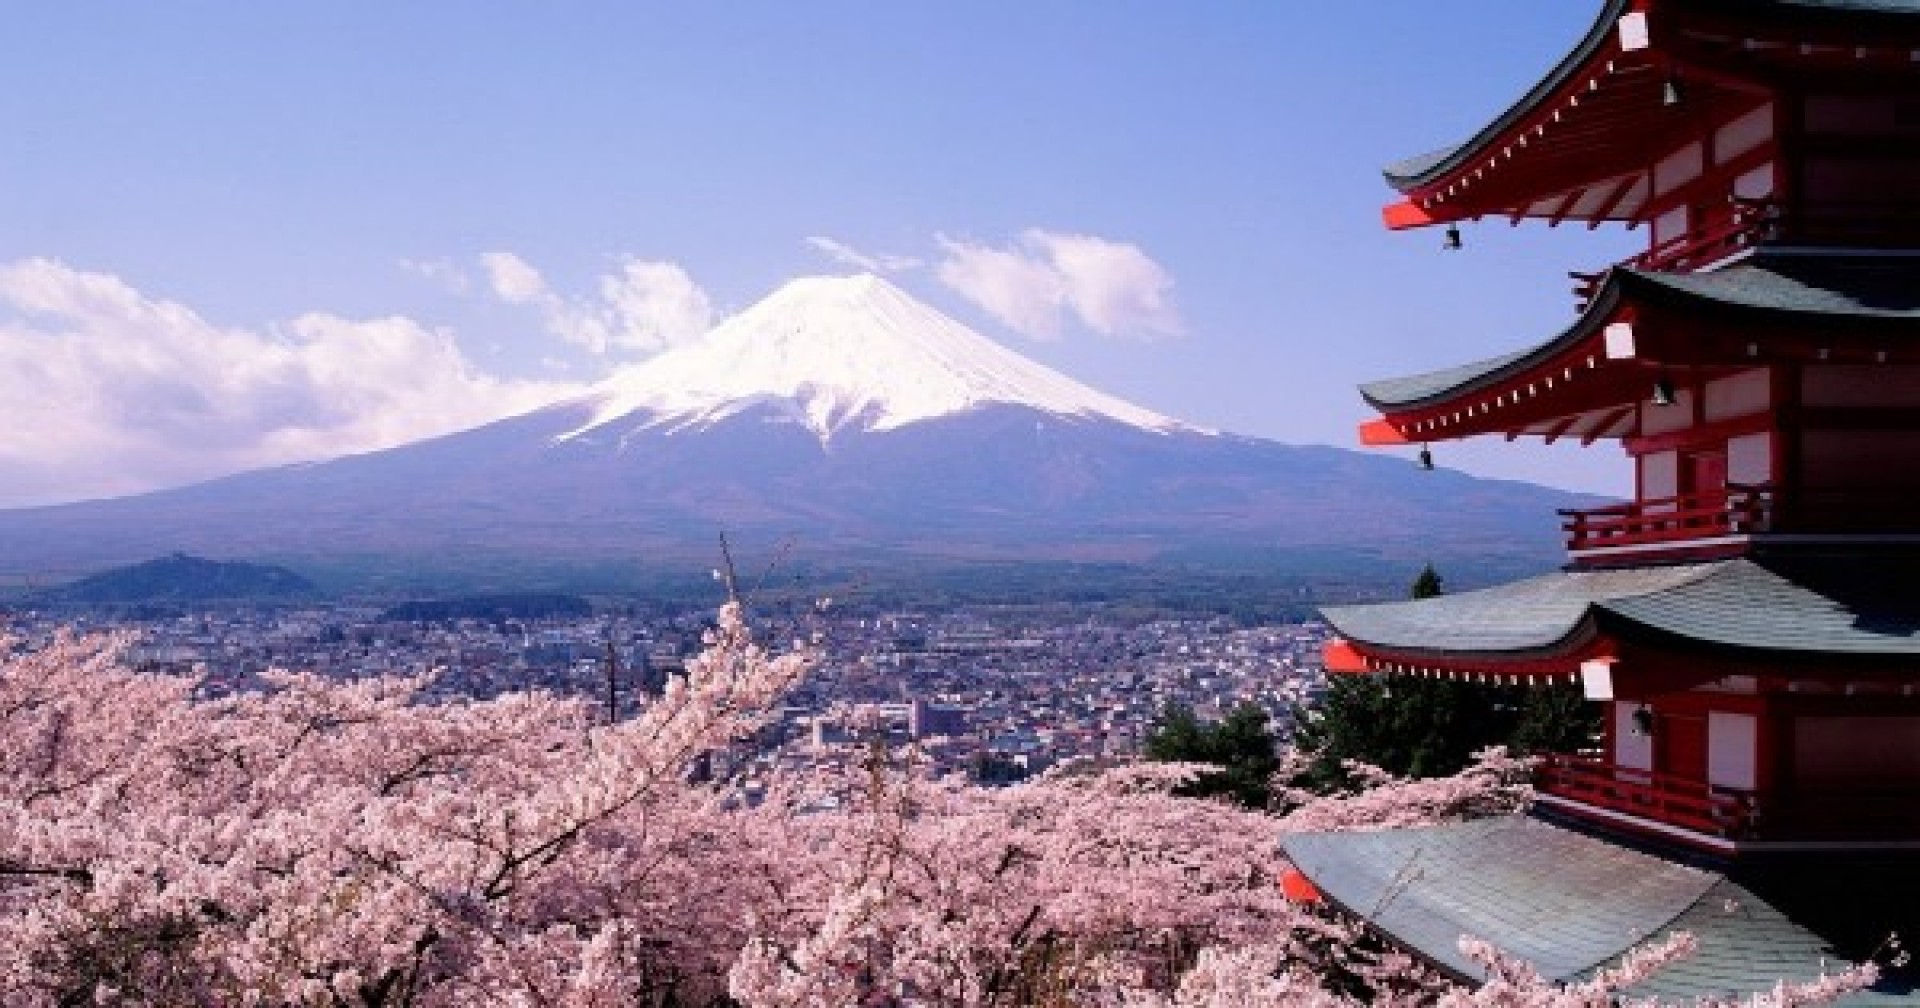 Khám phá những thành phố tốt để du học Nhật Bản